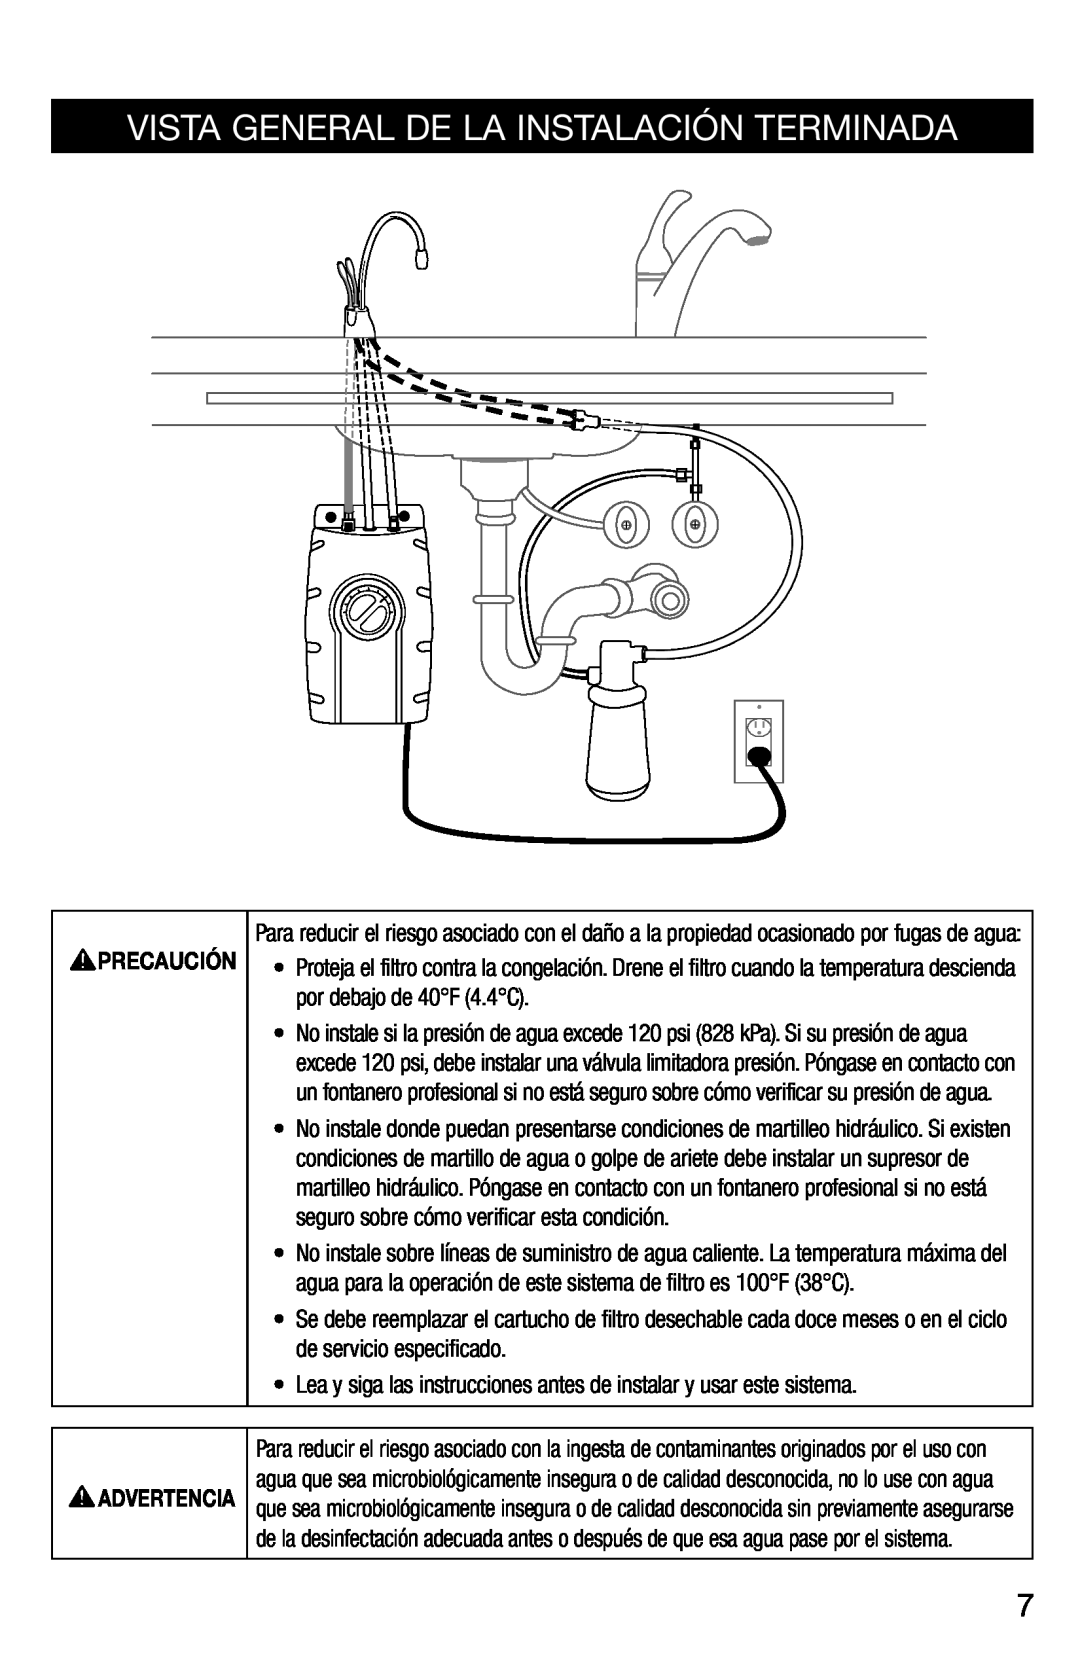 InSinkErator F-201R installation instructions Vista General De La Instalación Terminada, Precaución 